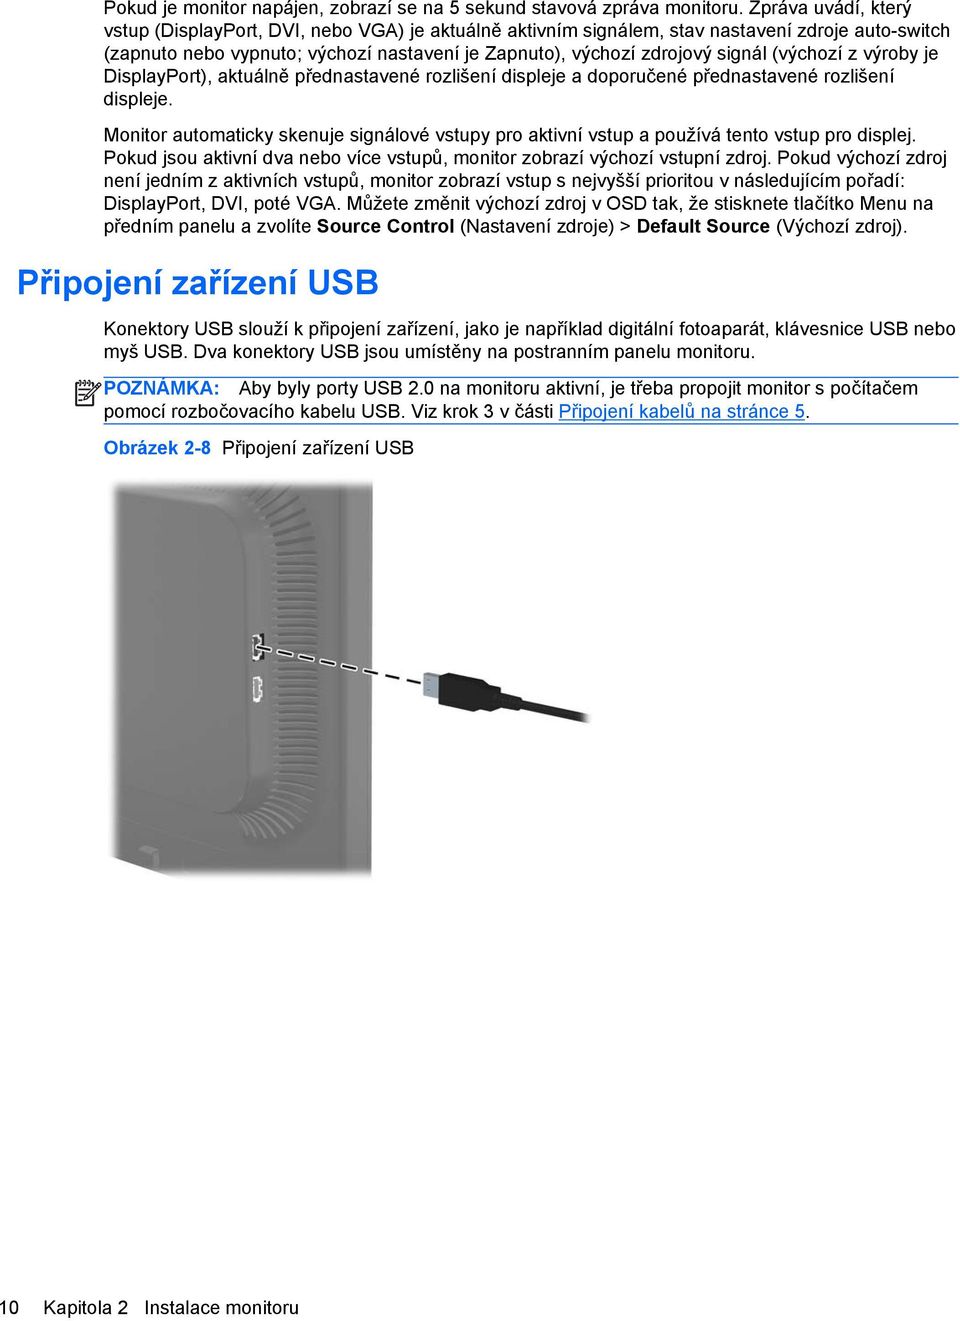 (výchozí z výroby je DisplayPort), aktuálně přednastavené rozlišení displeje a doporučené přednastavené rozlišení displeje.